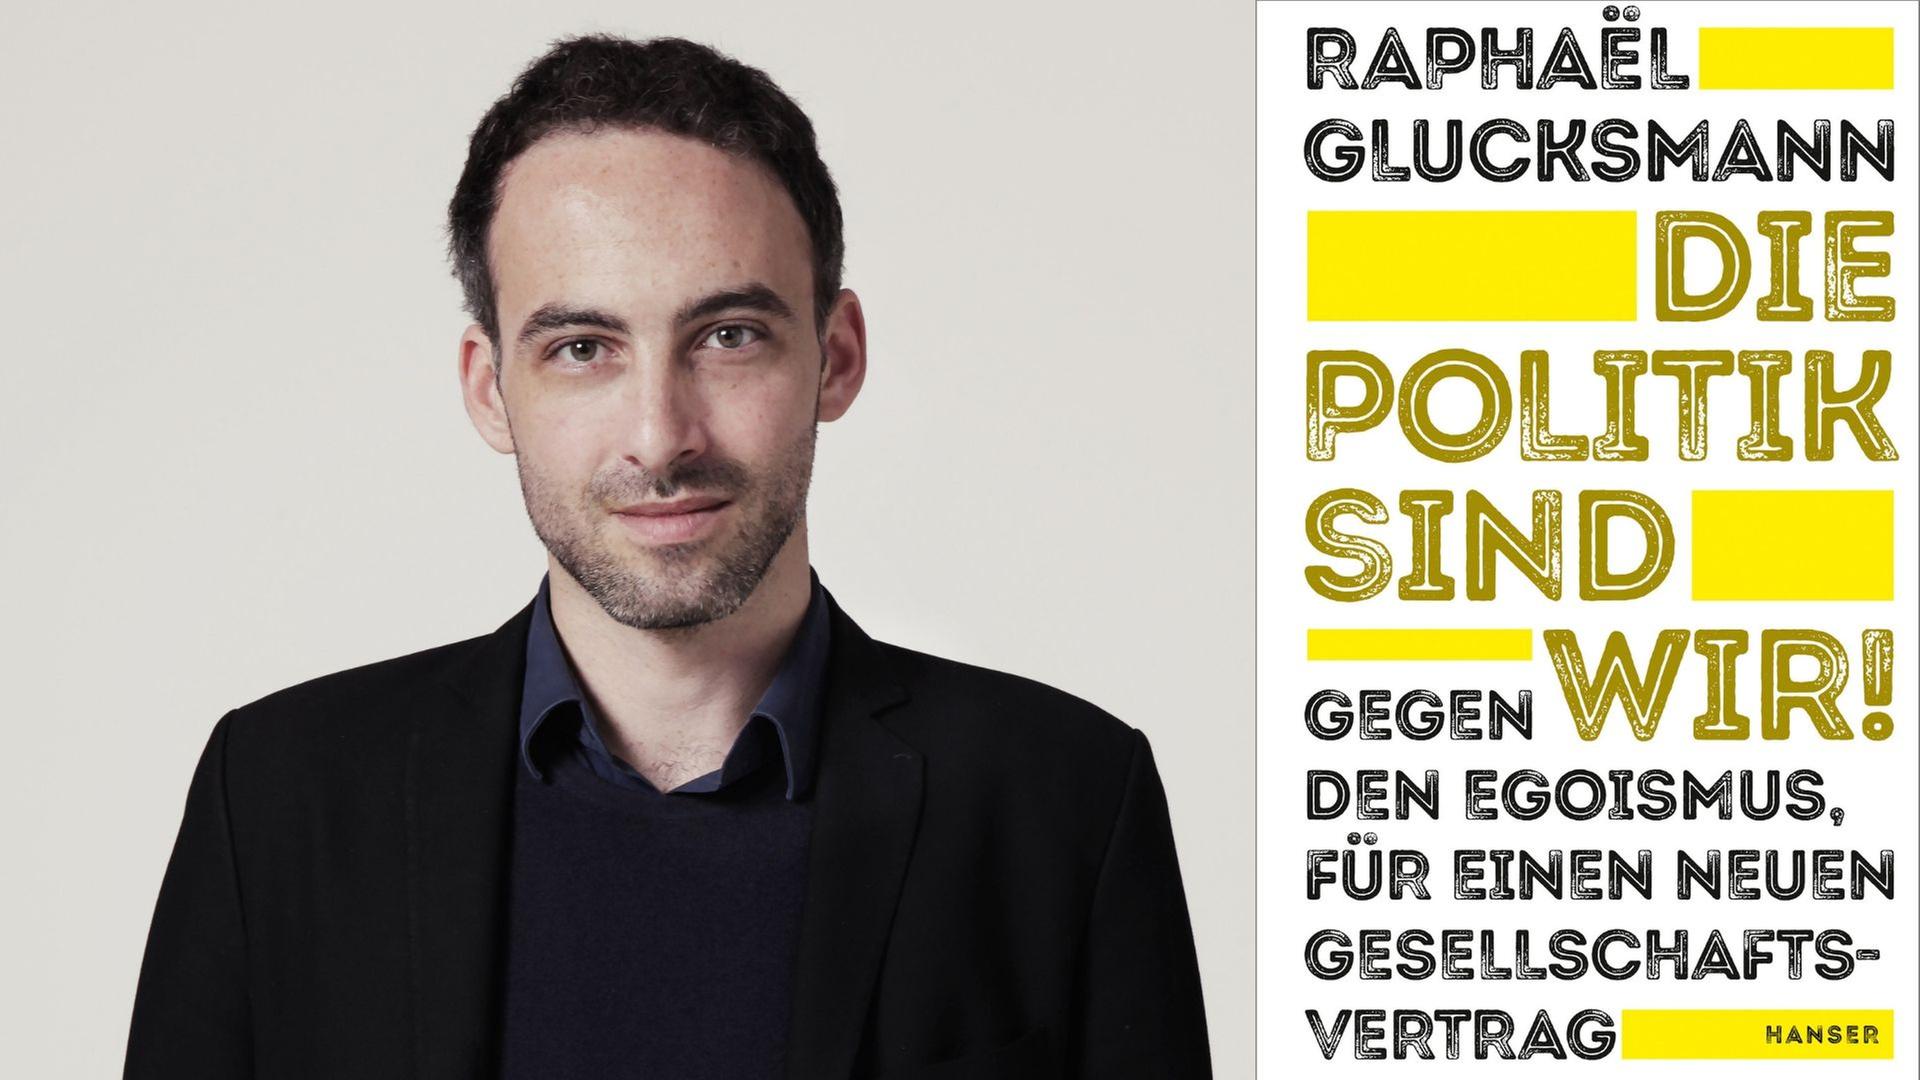 Zu sehen ist der Autor Raphael Glucksmann und das Cover seines Buches "Die Politik sind wir! Gegen den Egoismus, für einen neuen Gesellschaftsvertrag".